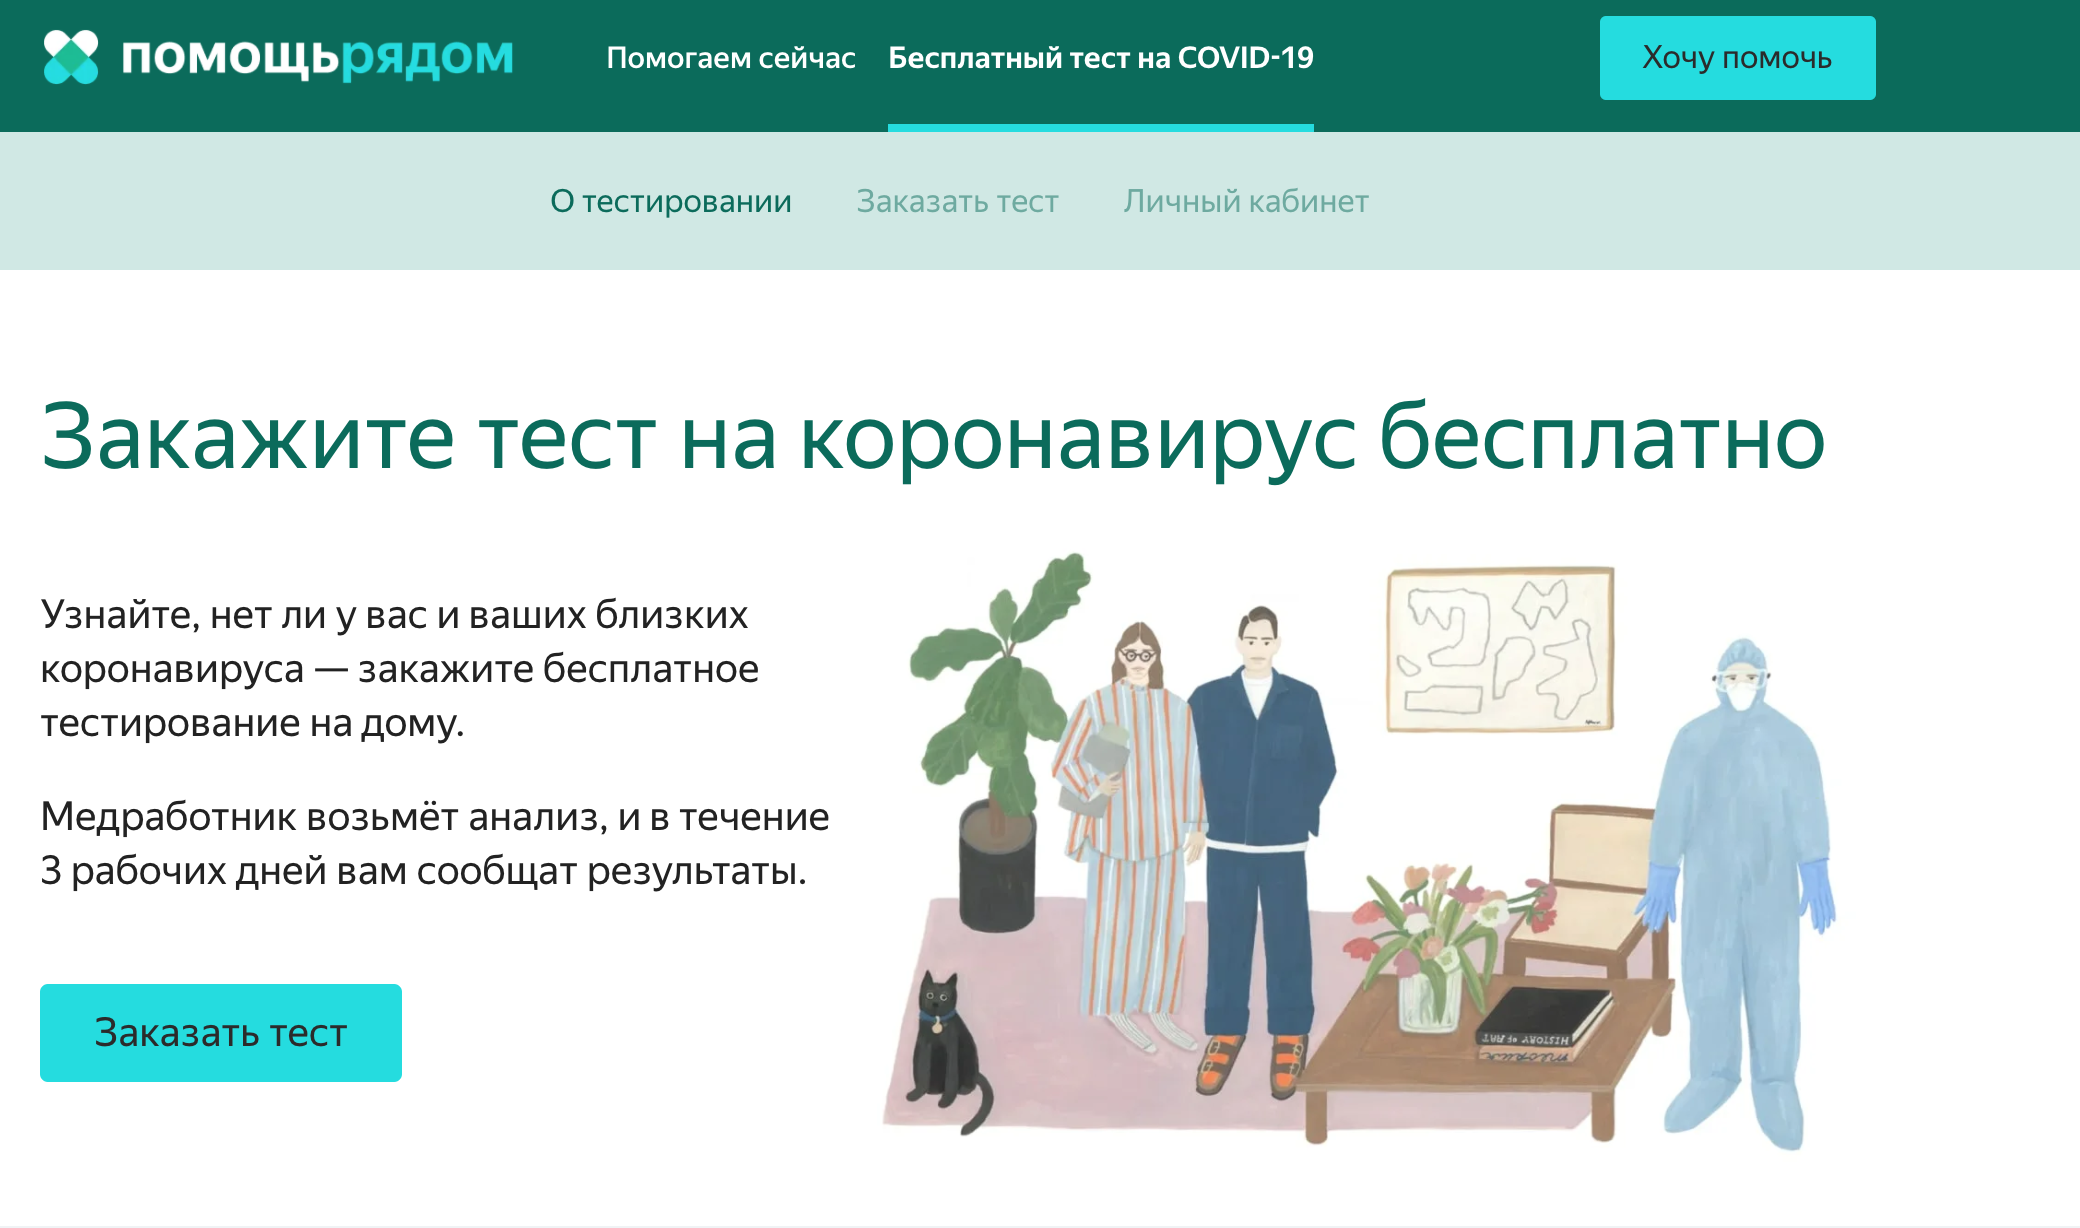 Делать бесплатные тесты. Тест на коронавирус в Москве. Тест на коронавирус на дому. Бесплатный тест на ковид. Как сдать бесплатный тест на коронавирус.